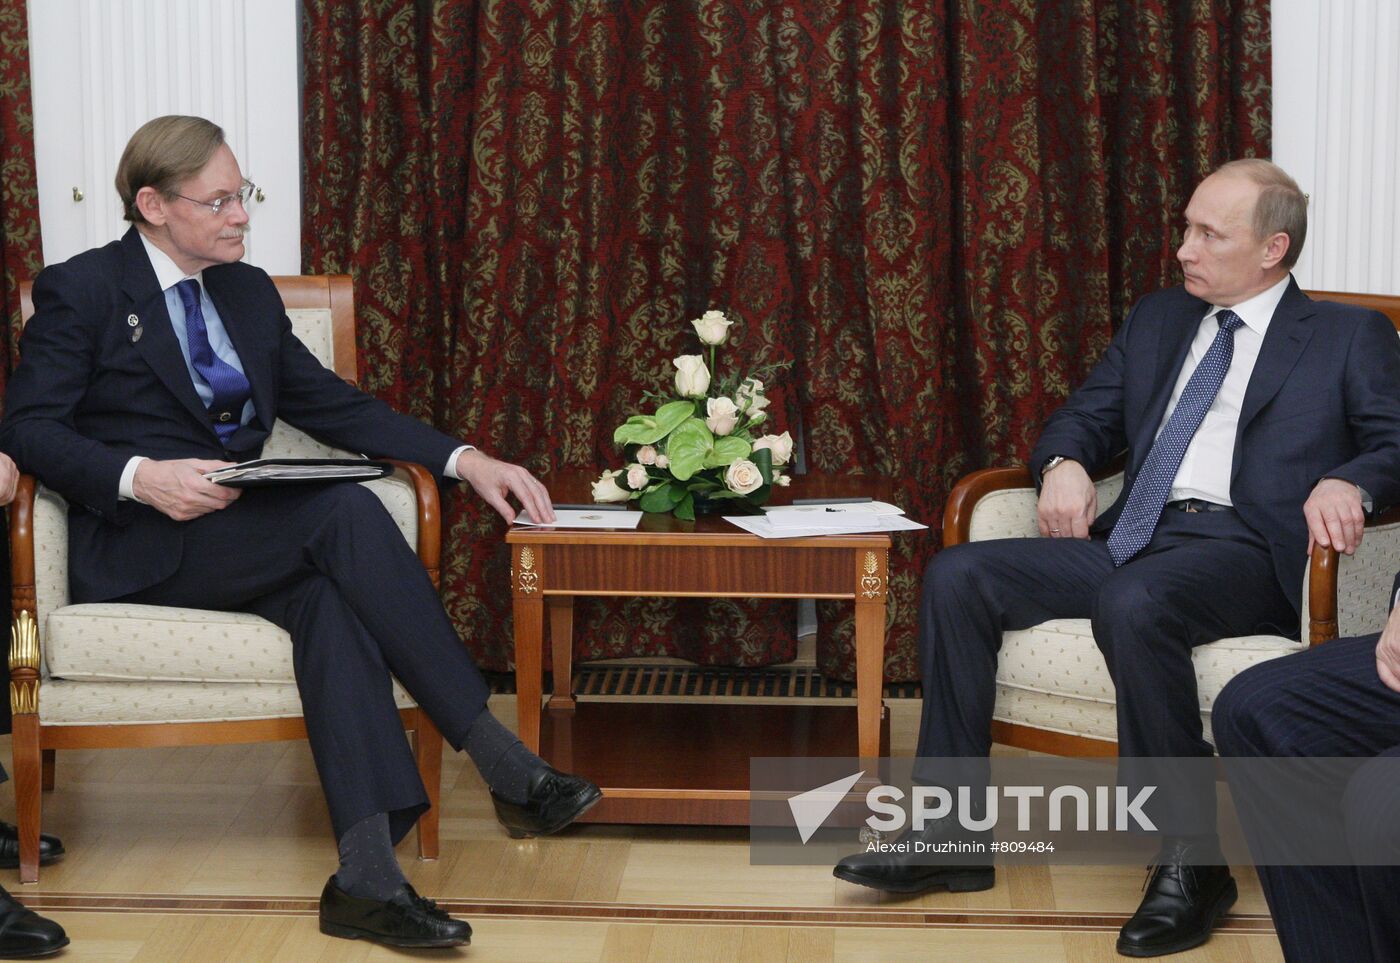 Vladimir Putin meets with Robert Zoellick